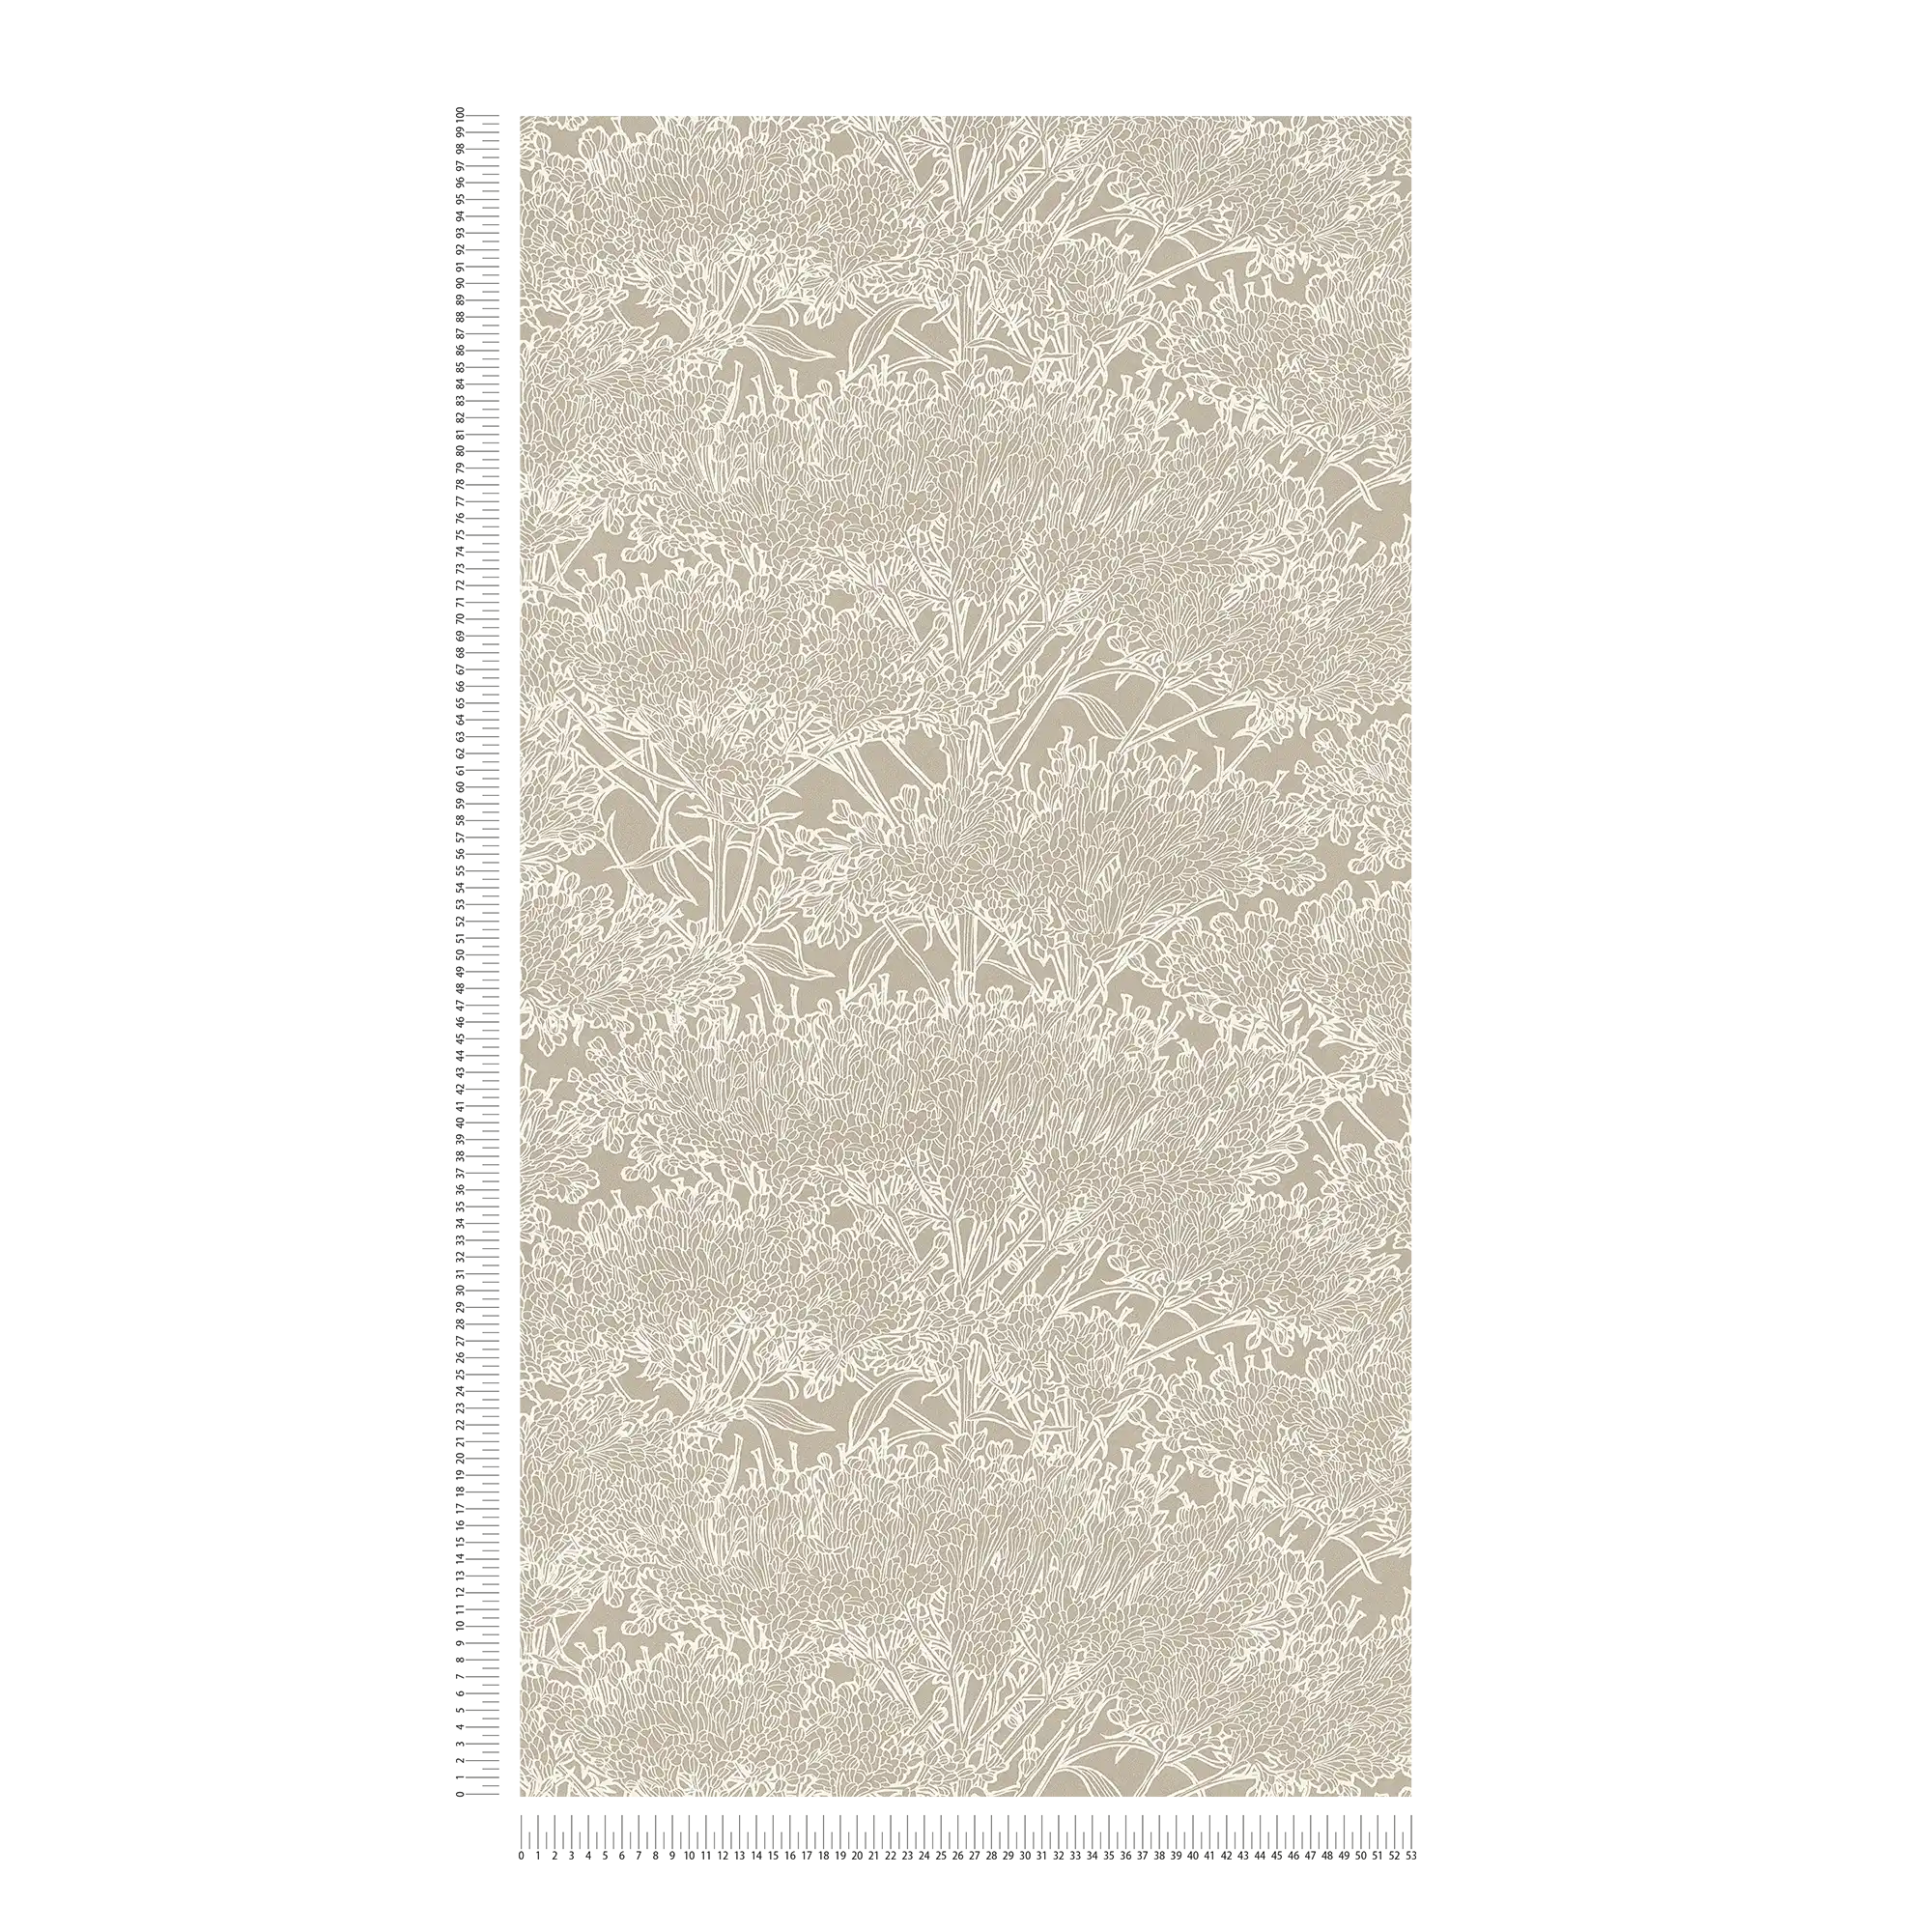             Mediterrane Tapete Sandfarben mit floralem Muster – Grau, Silber, Beige
        